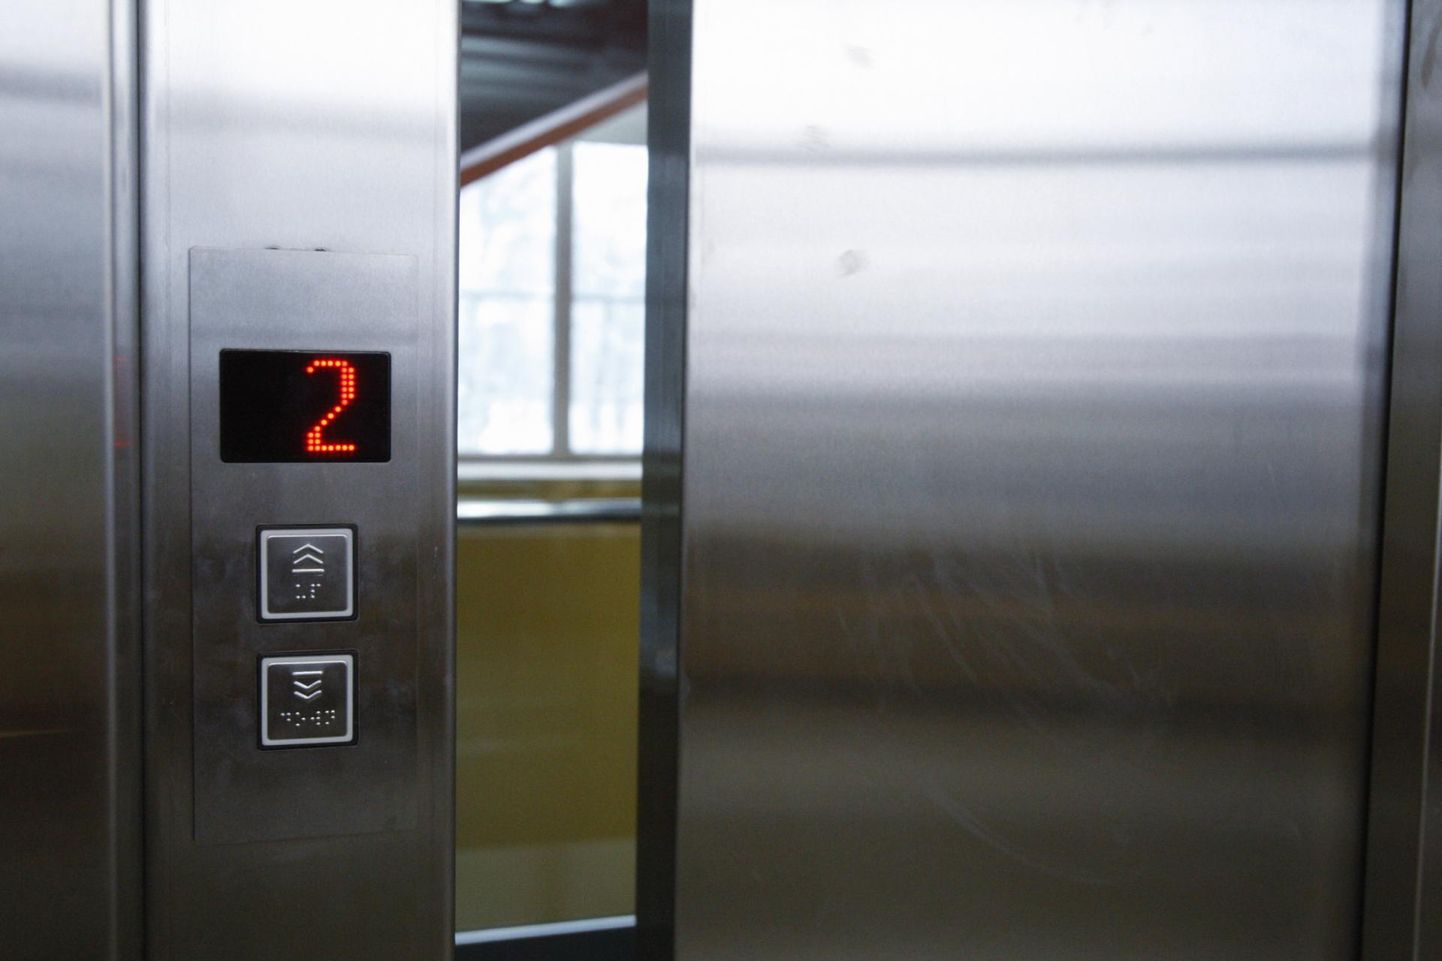 Pärnus Estonia spaahoetlli Pärna tänava hoones jäi kaheksa inimest lifti lõksu. Foto on illustreeriv